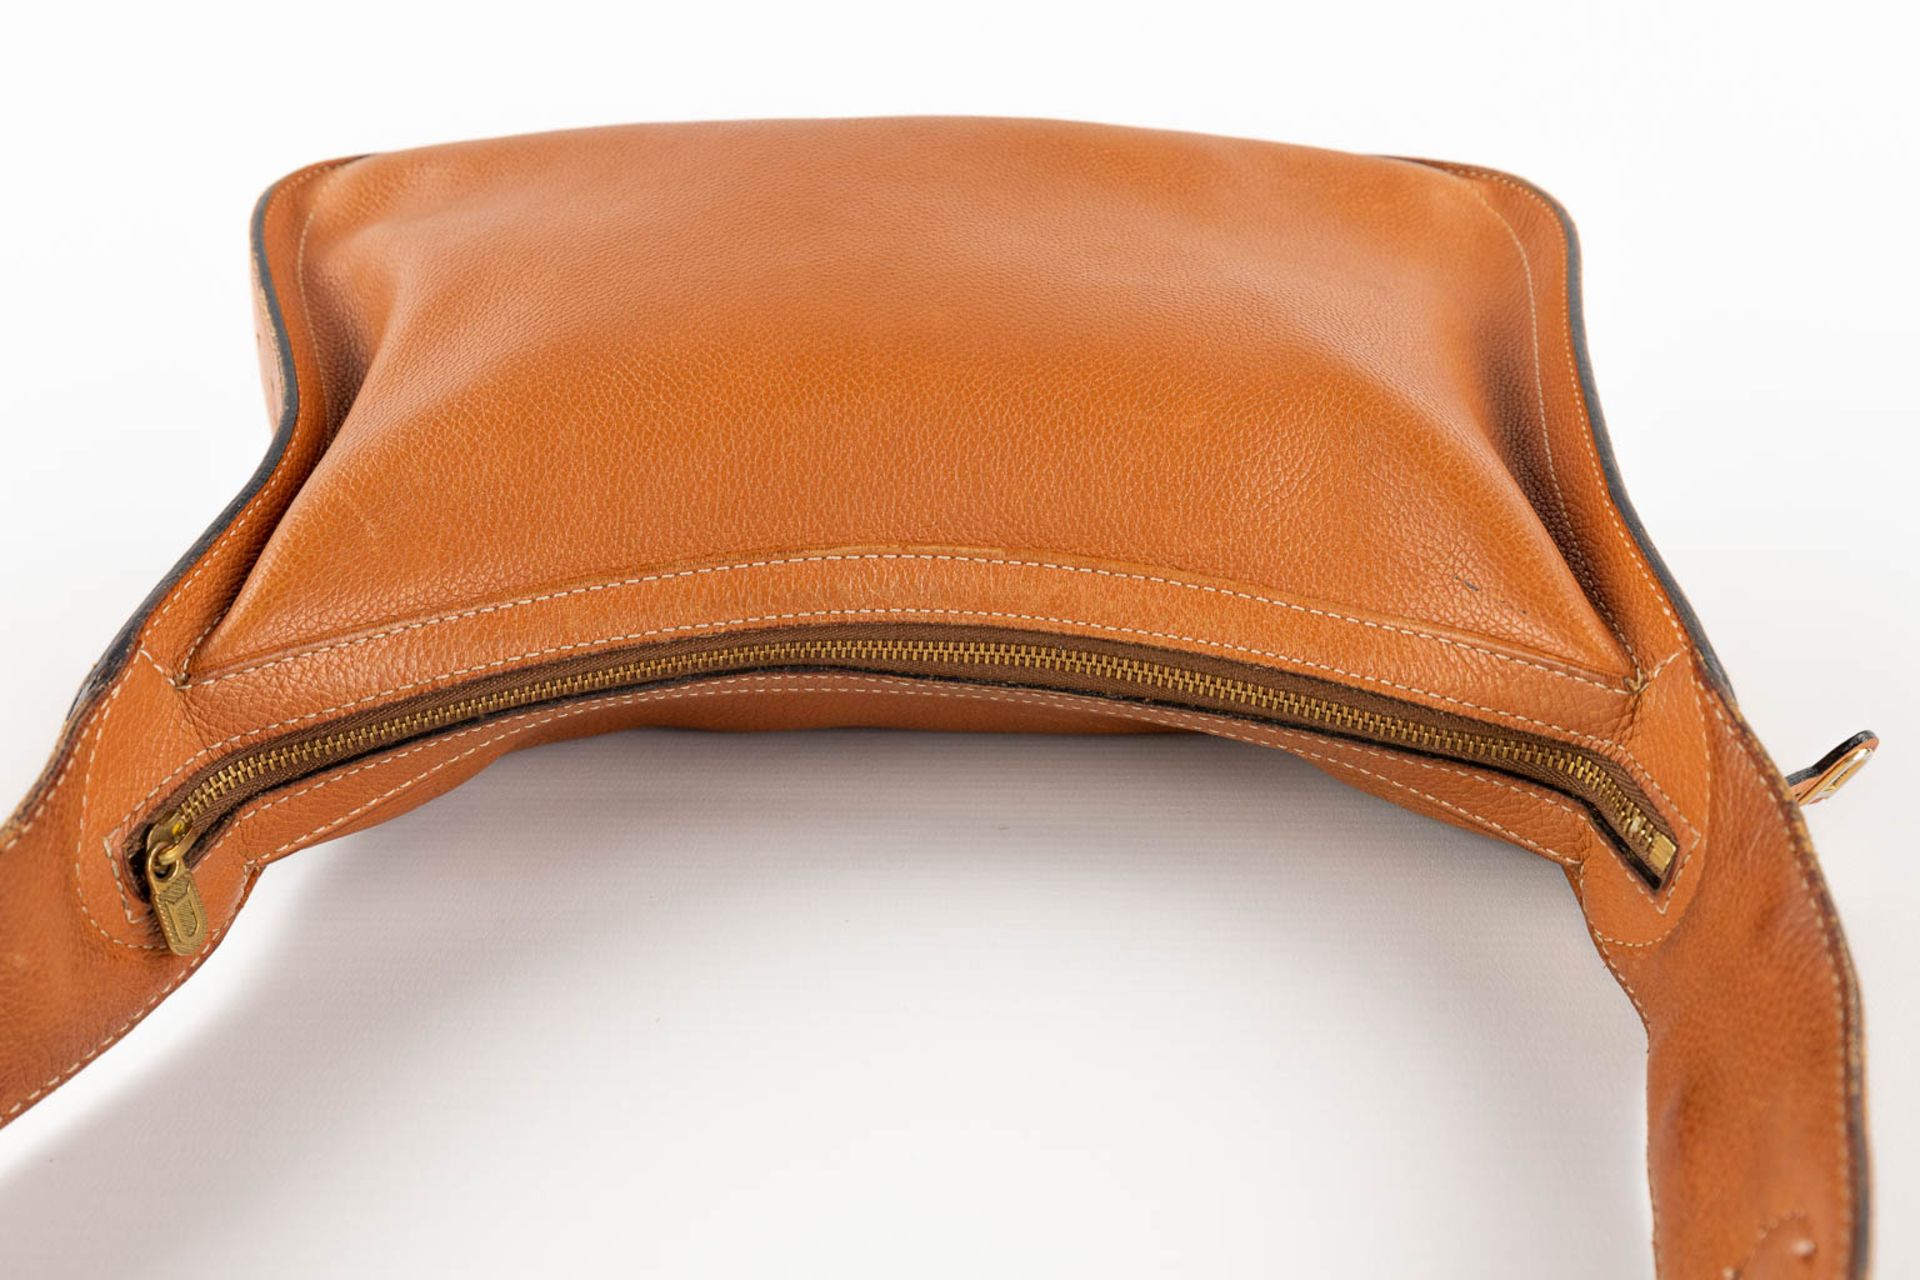 Delvaux, Pensée, a handbag made of brown leather. (W:24 x H:32 cm) - Bild 9 aus 18